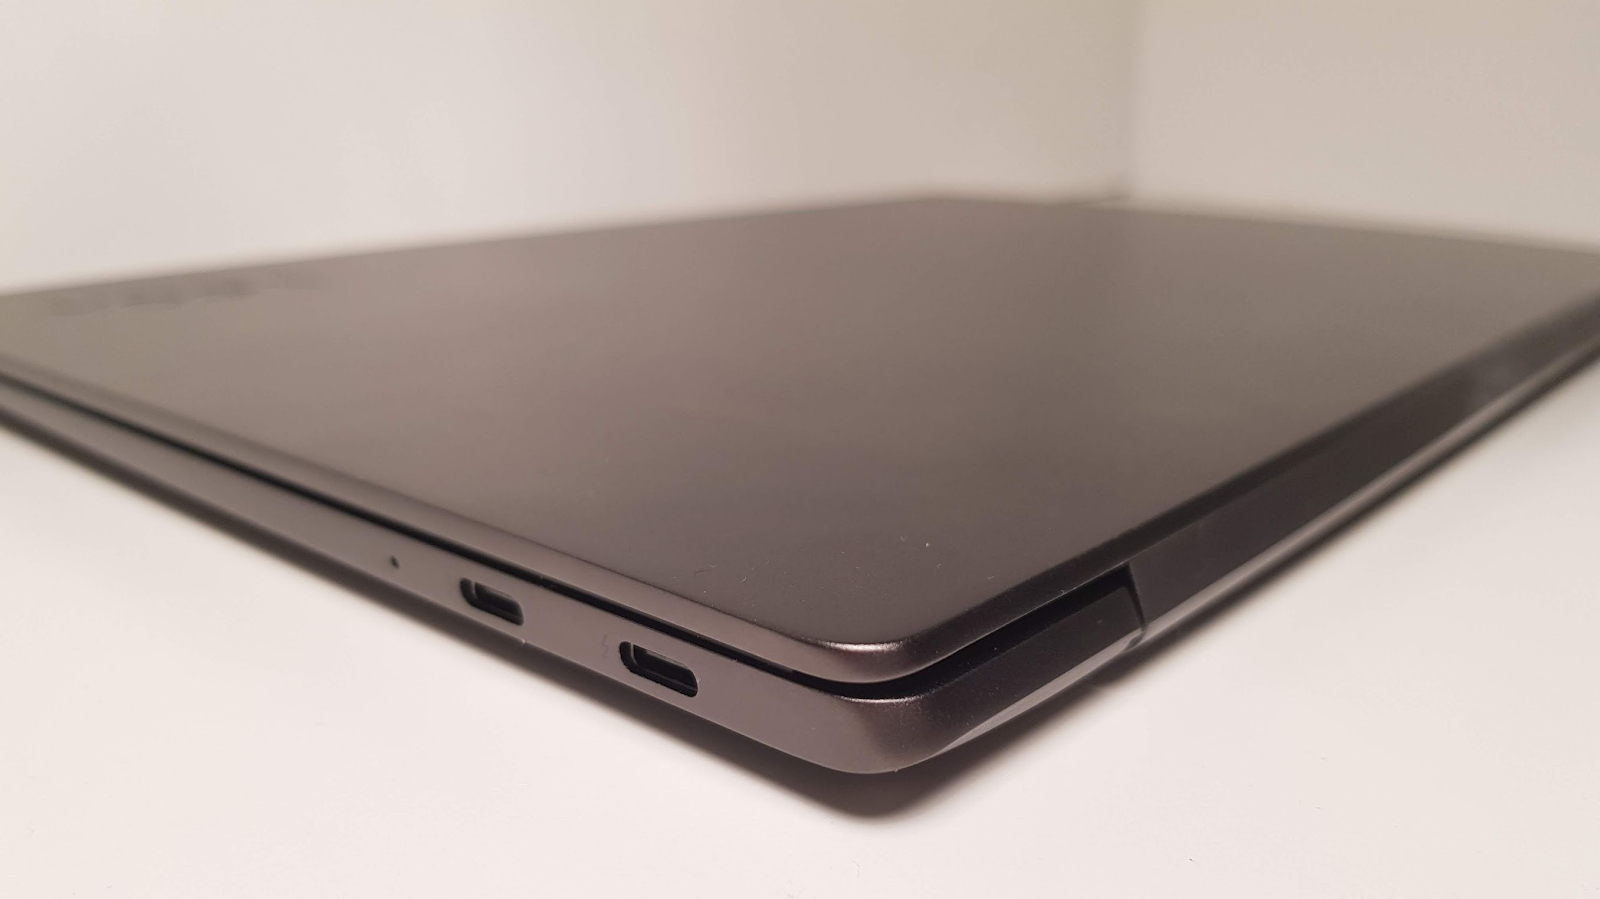 Обзор ноутбука Lenovo S730-13 (2018): мощное железо в стильном алюминиевом корпусе - 3